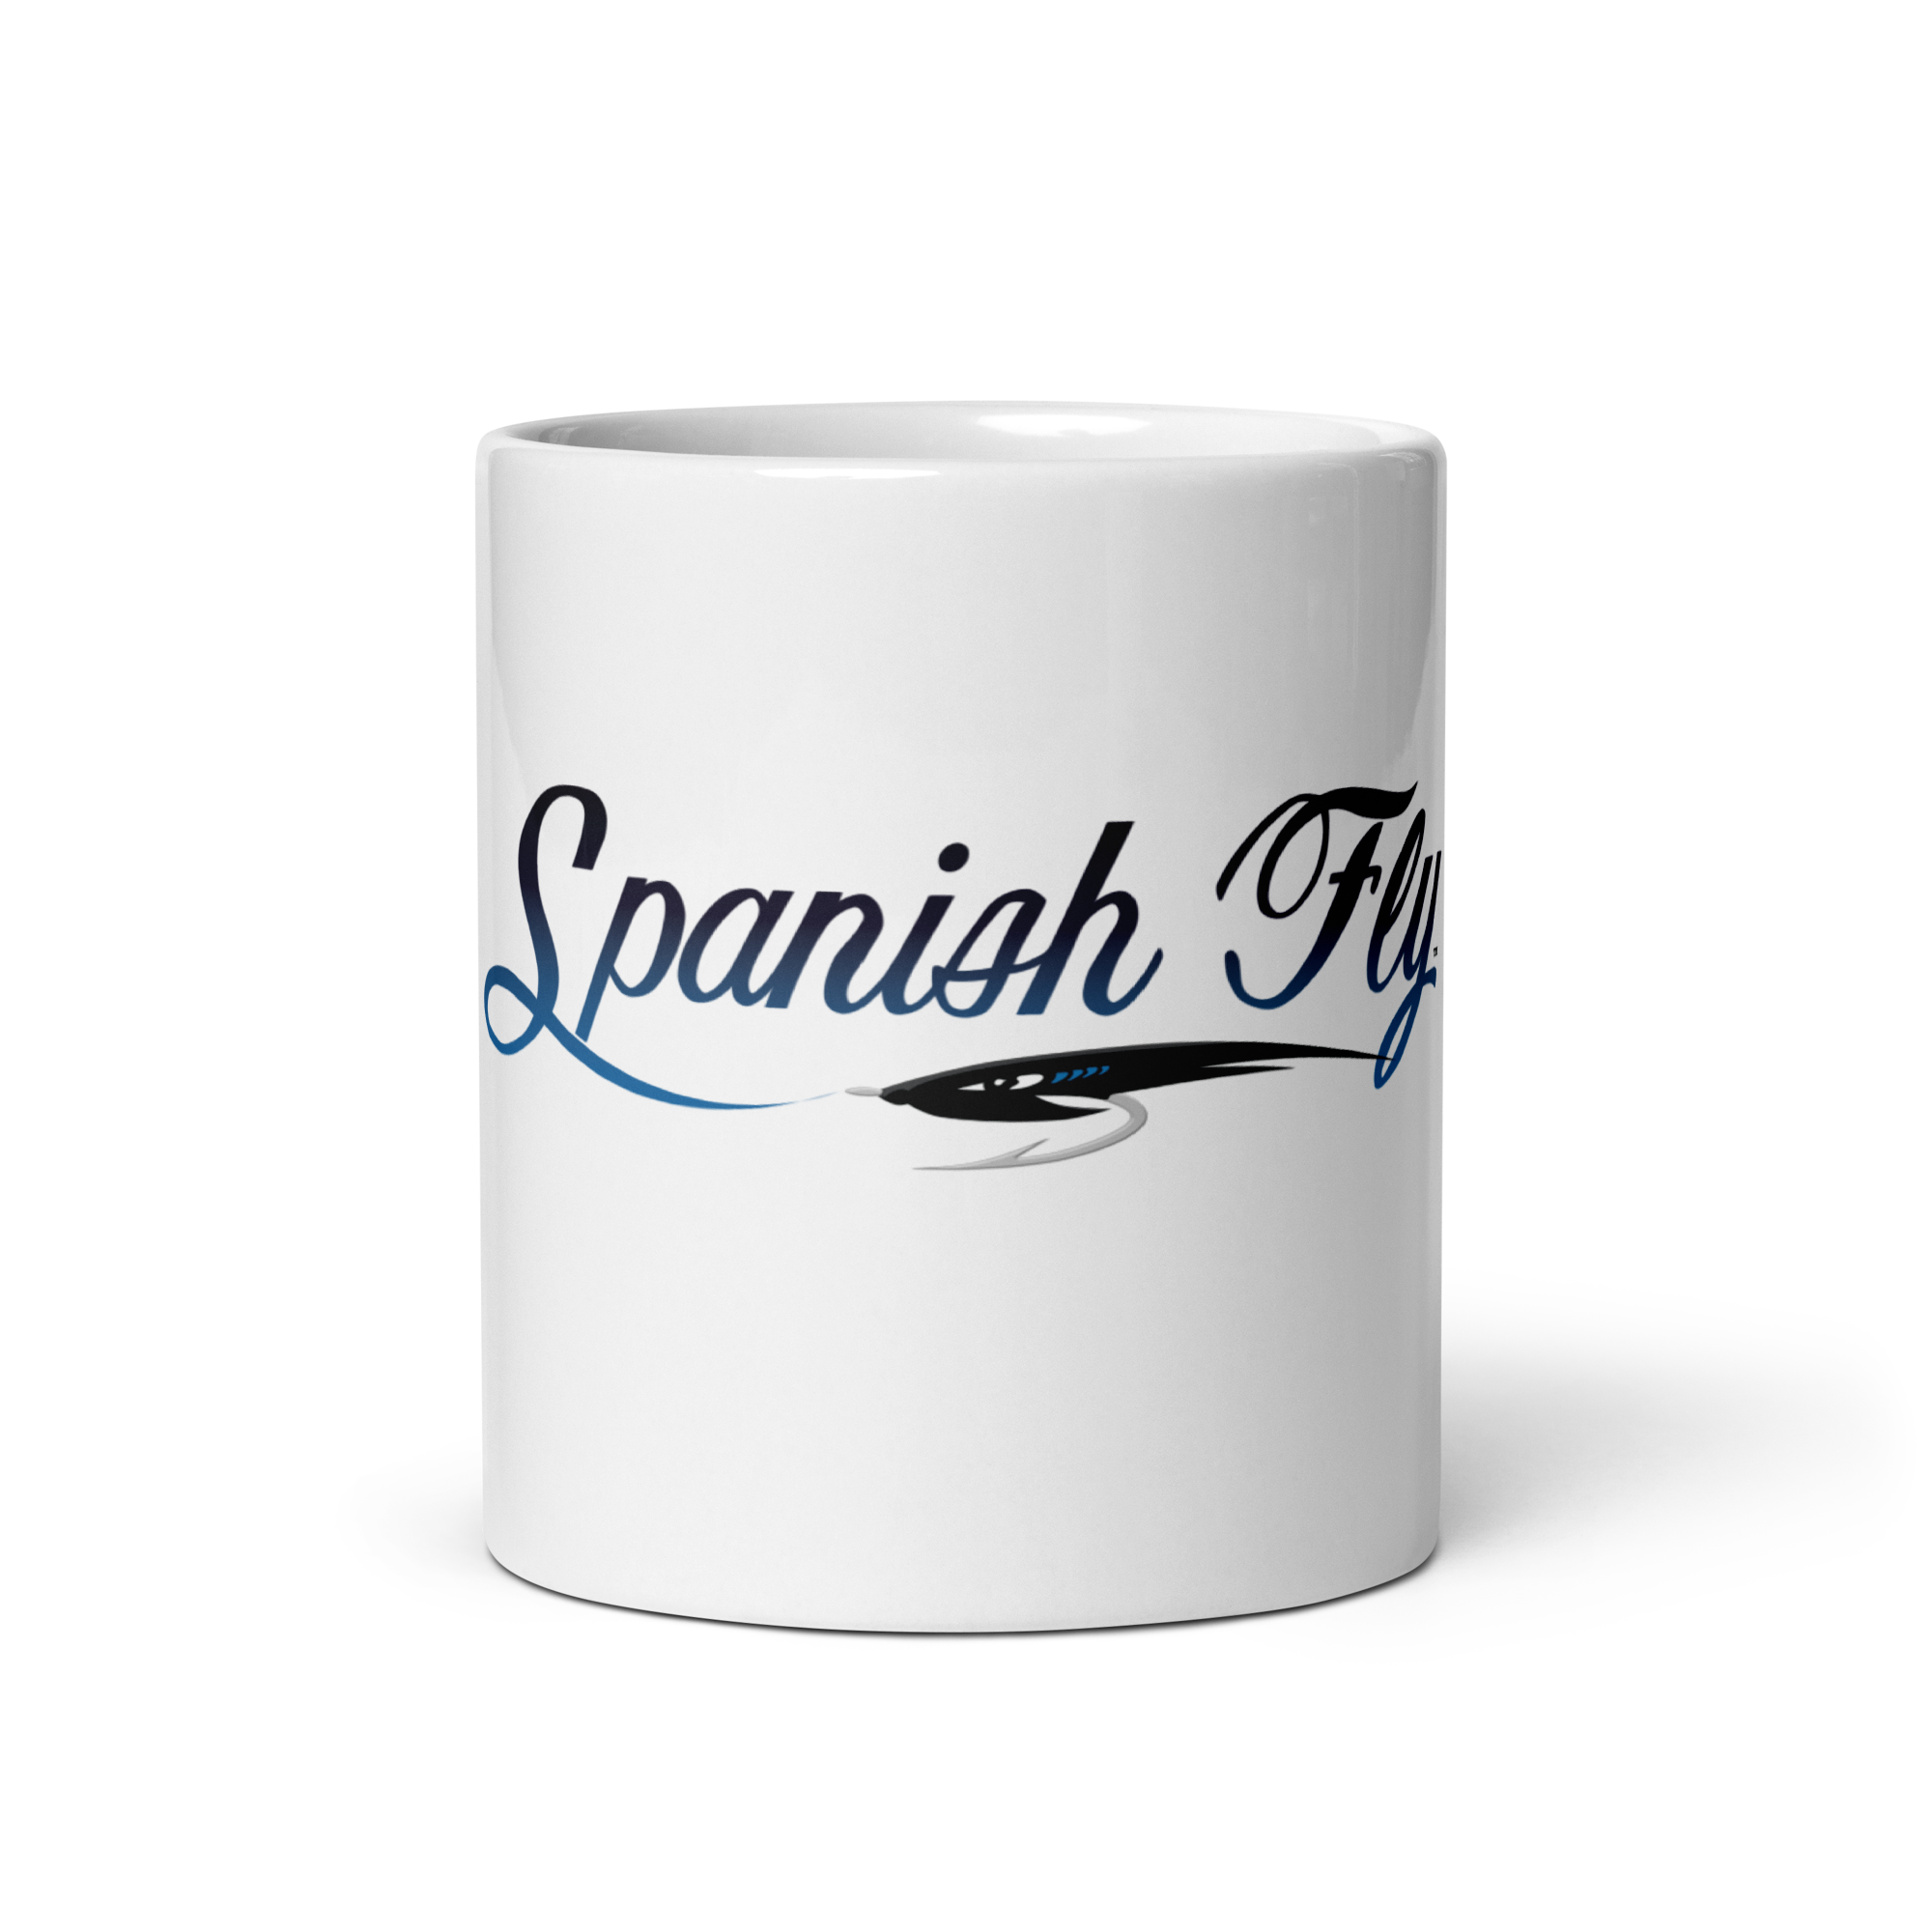 Spanish Fly Mug